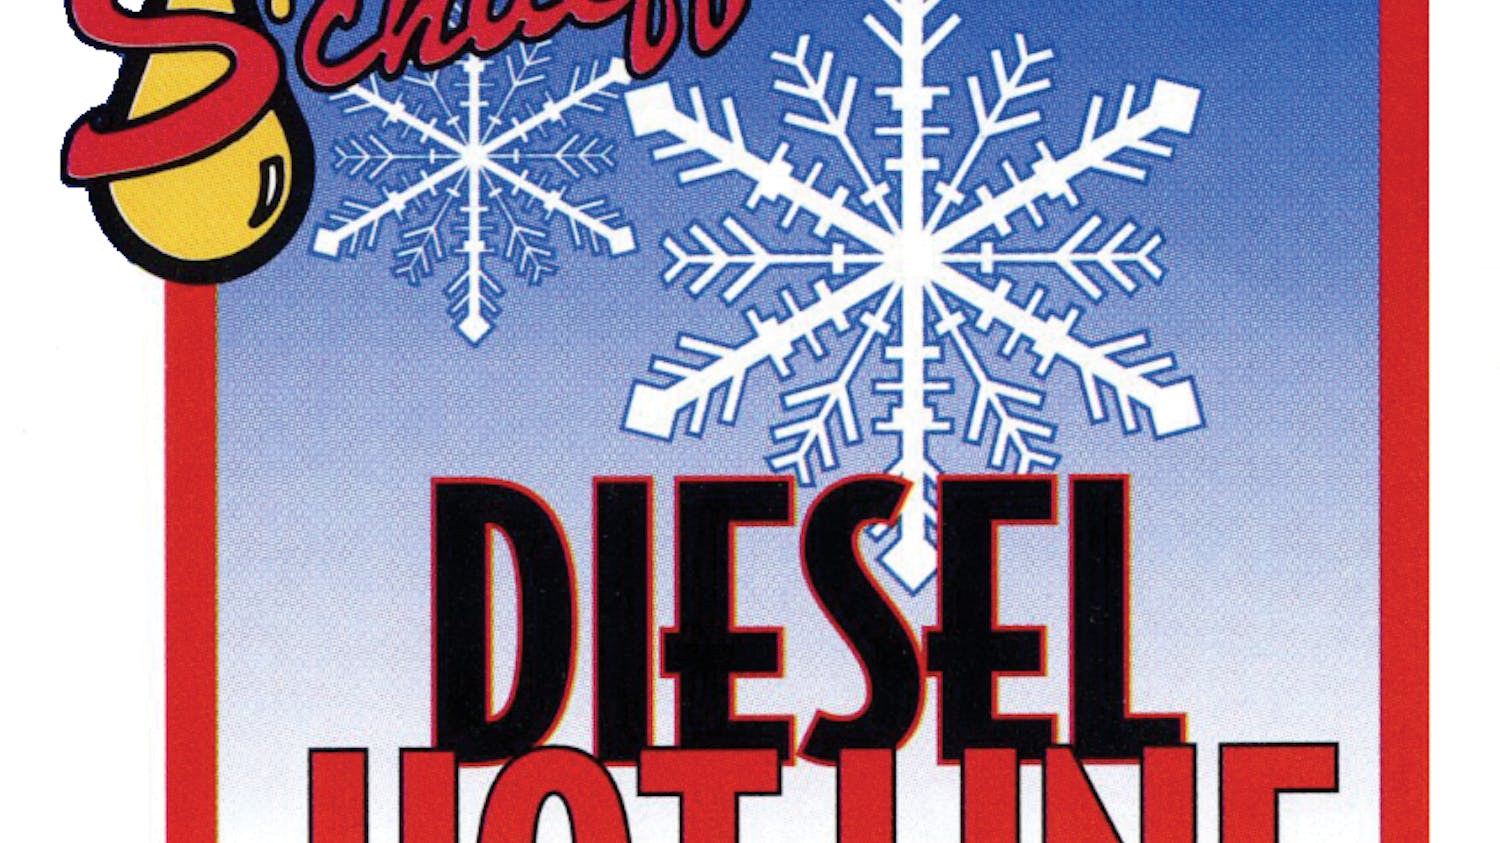 Schaeffer Dieselhotline Logo F8dfinvpbd3wm